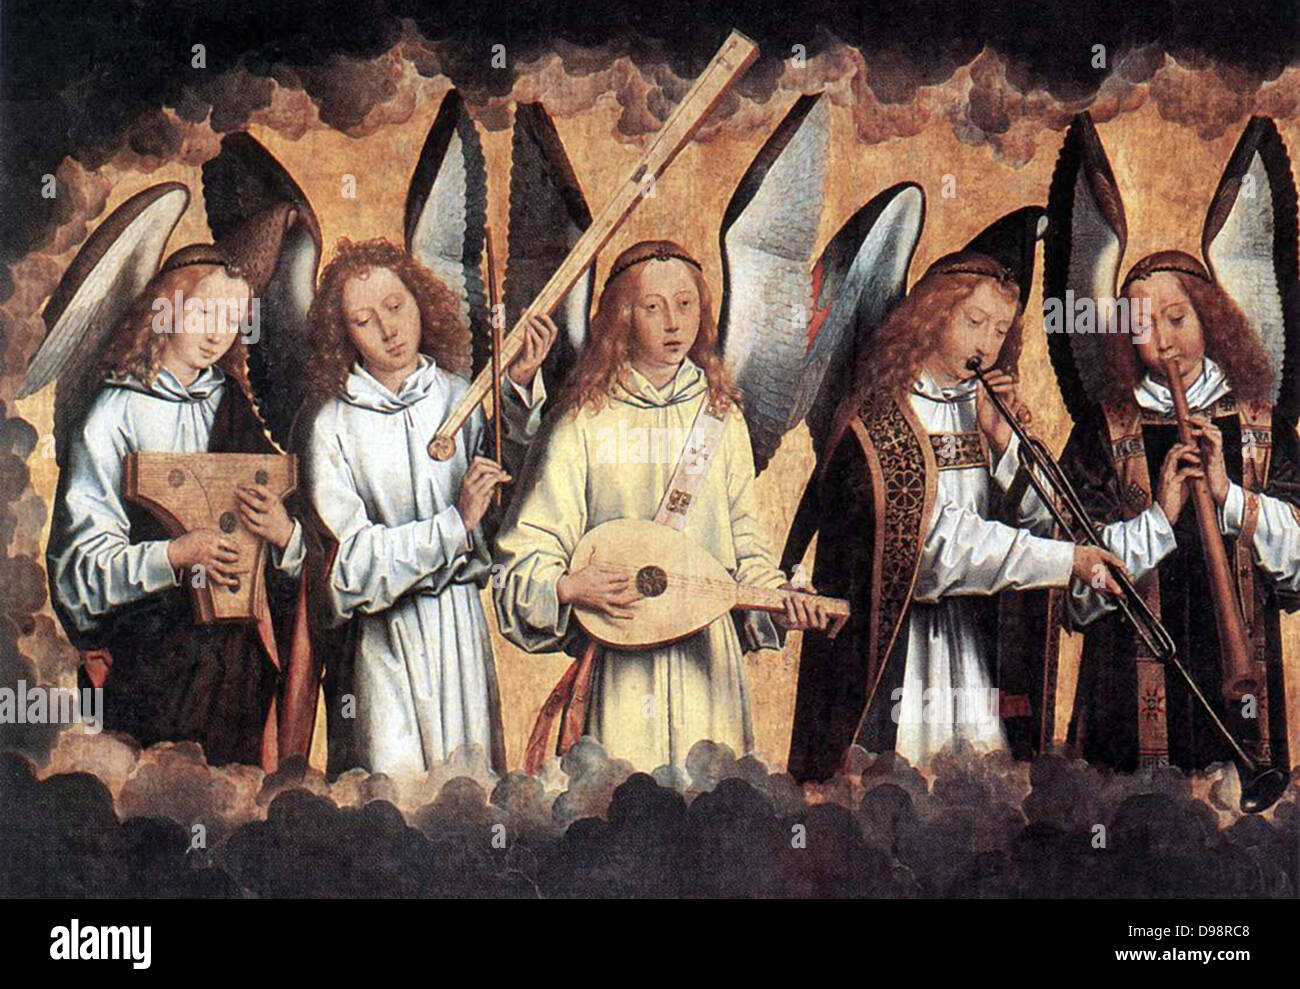 Engel Musiker (links), 1480. Öl auf Holz. Hans Memling oder Memlin (c) 1430-1494 in Deutschland geborene Frühen niederländischen Maler. Engel von Wolken Musik machen auf verschiedenen Instrumenten umgeben. Christian Stockfoto